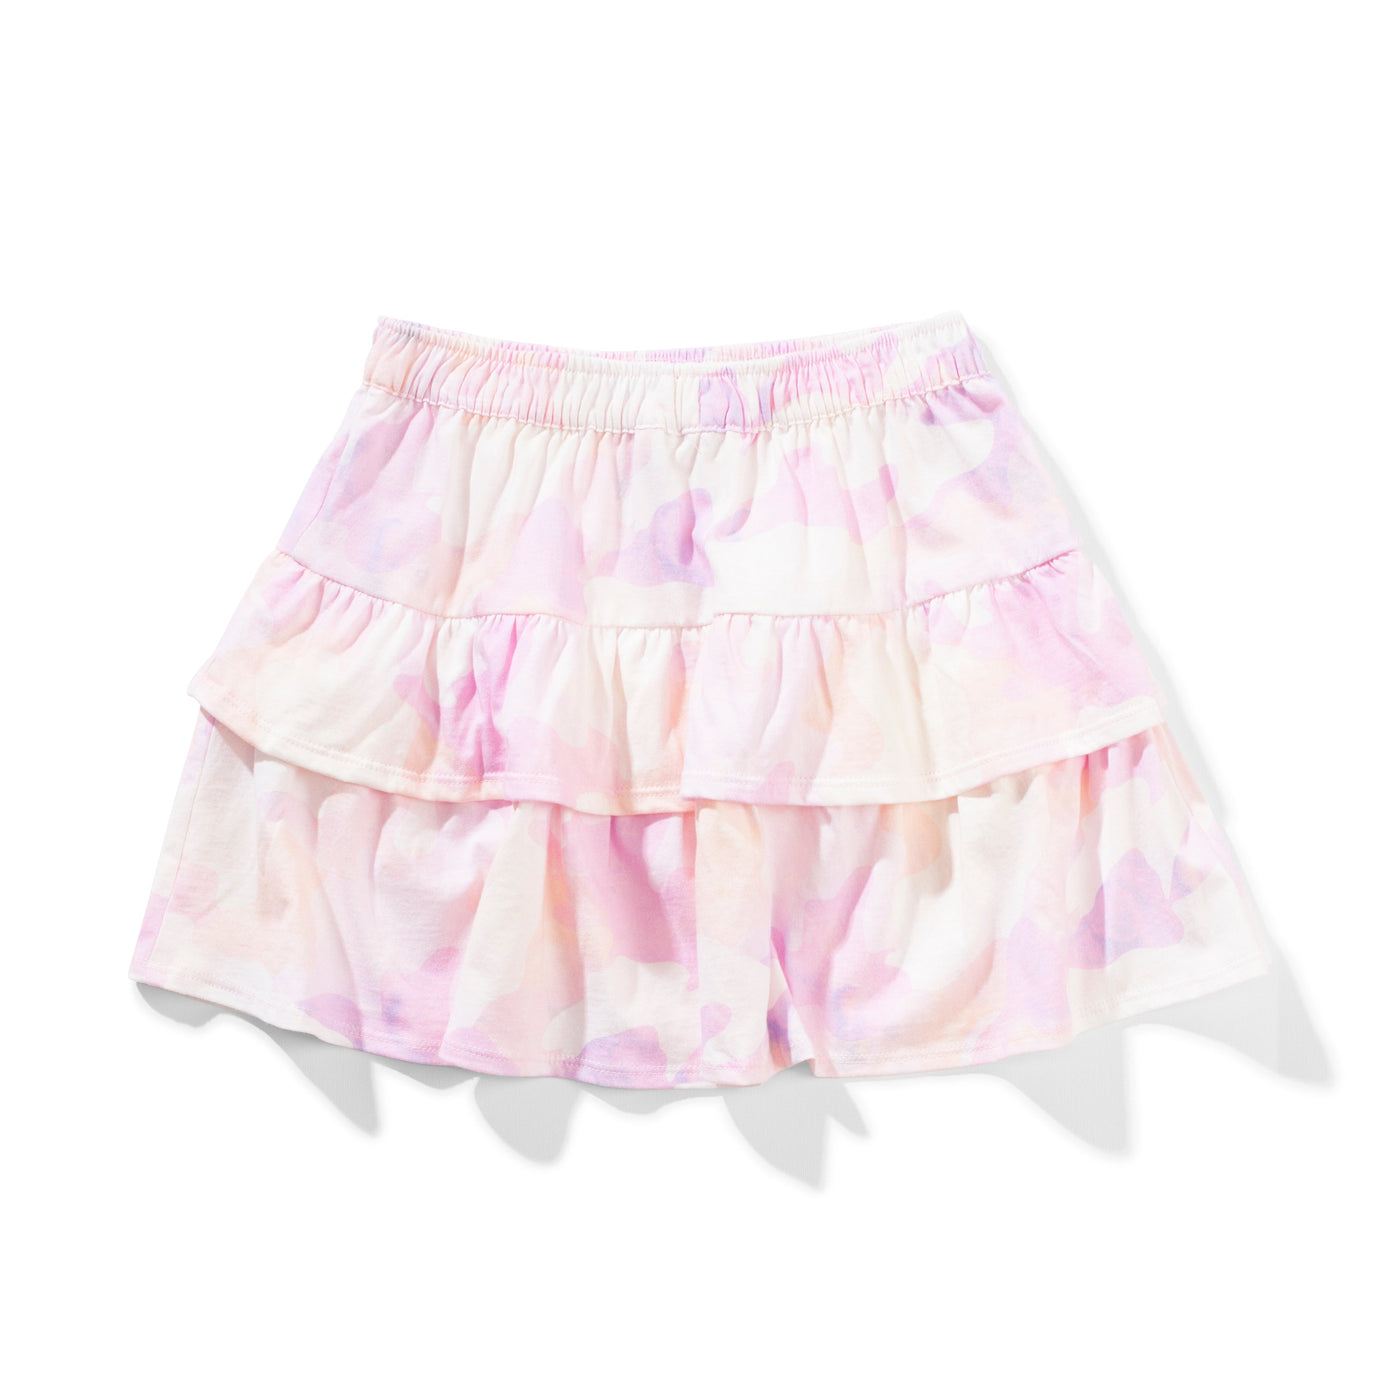 Ruby Skirt - Crystal Camo Skirt Missie Munster 